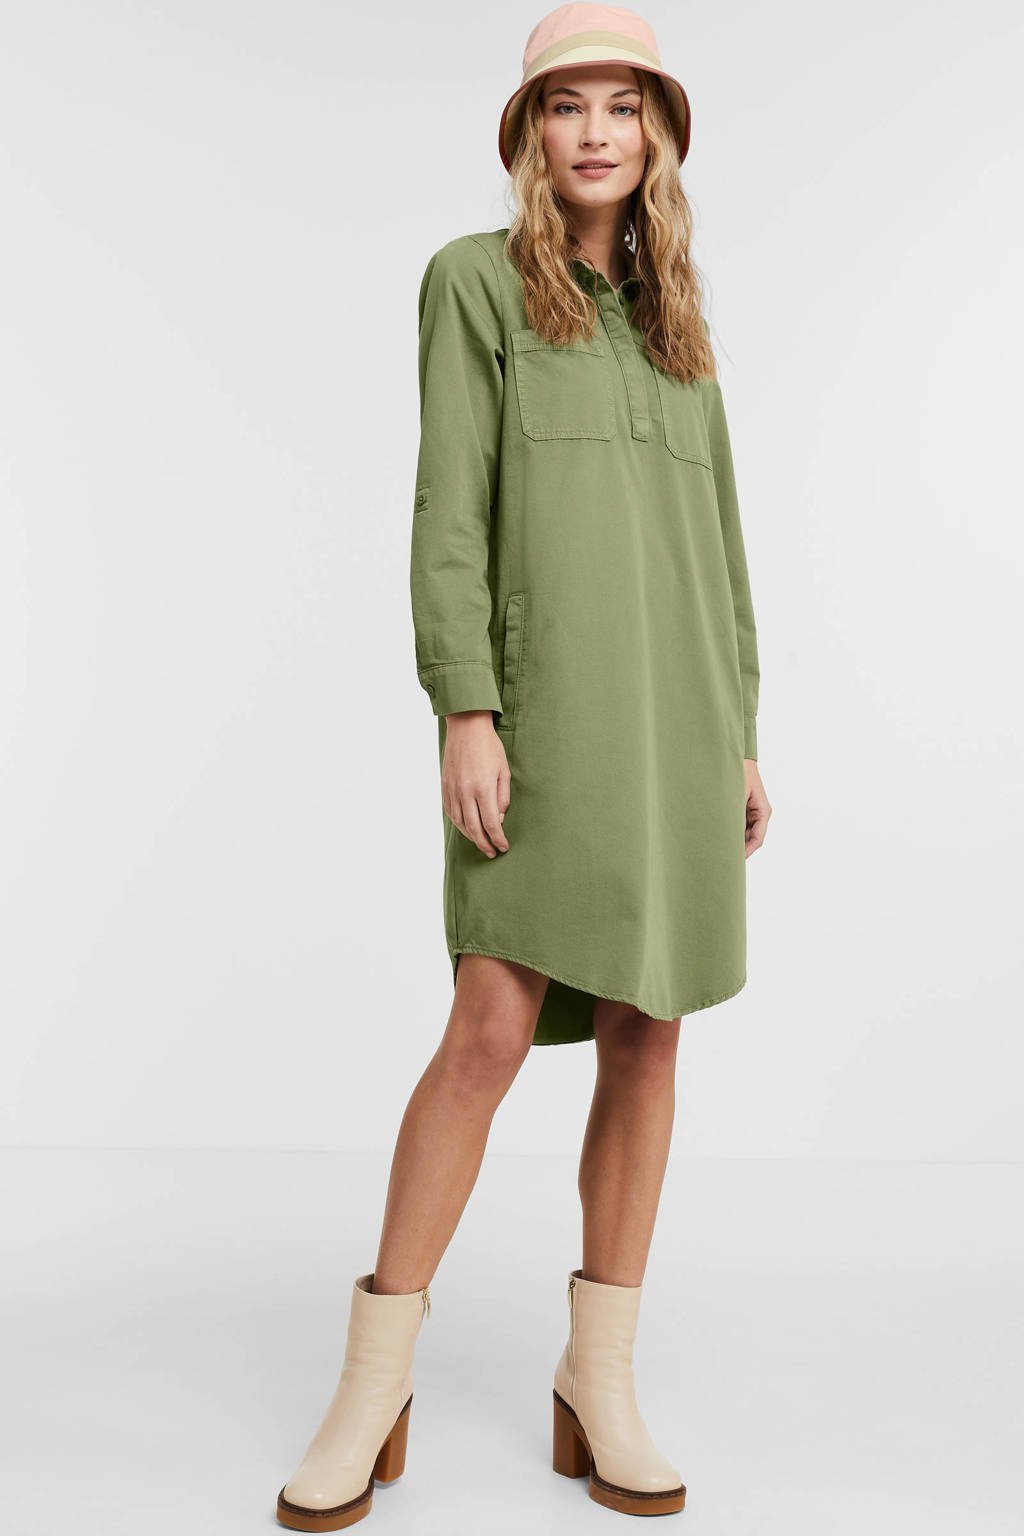 ESPRIT Women Casual jurk groen